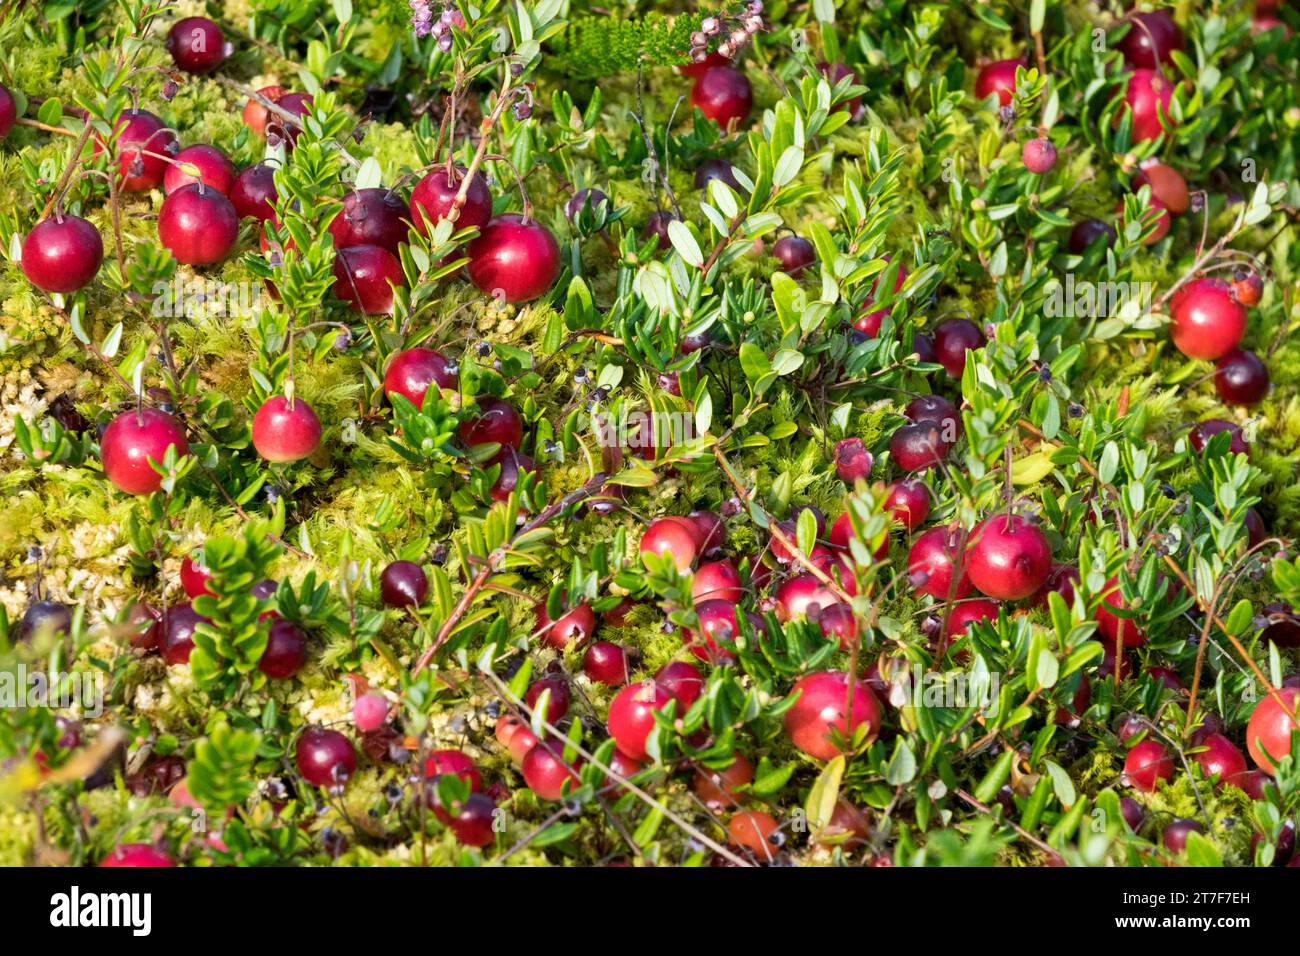 Peat bog, Plant, American Cranberry, Vaccinium macrocarpon, Red, cranberries, Edible, Berries Stock Photo